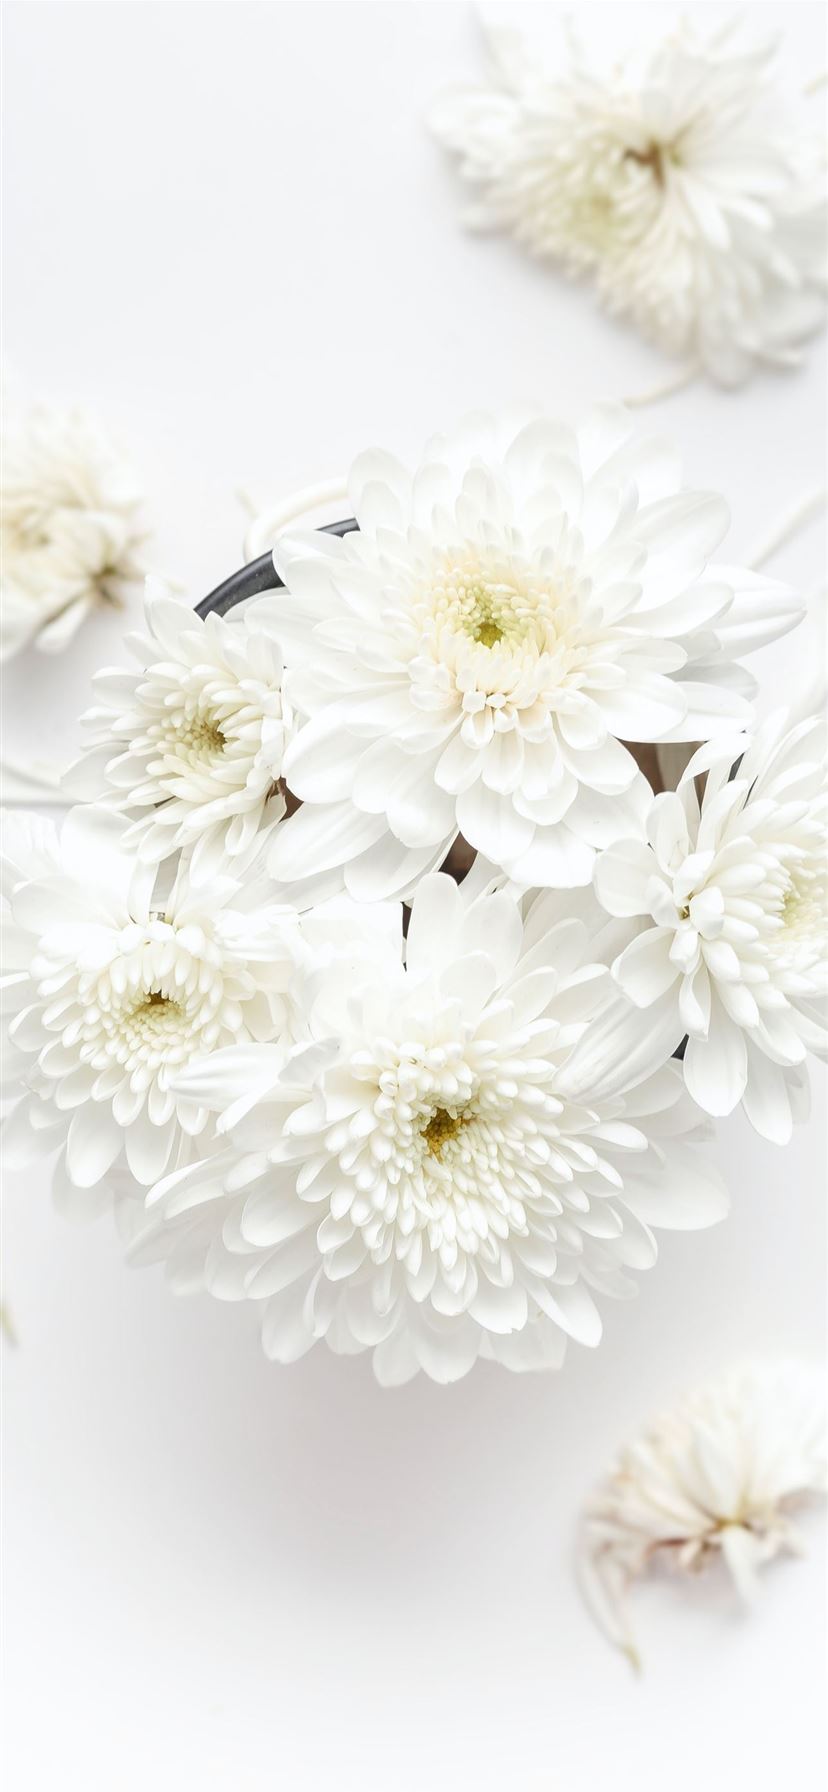 Cùng tận hưởng vẻ đẹp tinh khôi của một loài hoa trắng đầy thanh lịch trong bức ảnh này. Với những cánh hoa trắng tinh khôi, bức ảnh này sẽ mang đến cho bạn một cảm giác thanh tịnh và thư giãn. Hãy để tâm hồn của bạn được hòa nhịp với vẻ đẹp thiên nhiên qua bức ảnh này nhé!